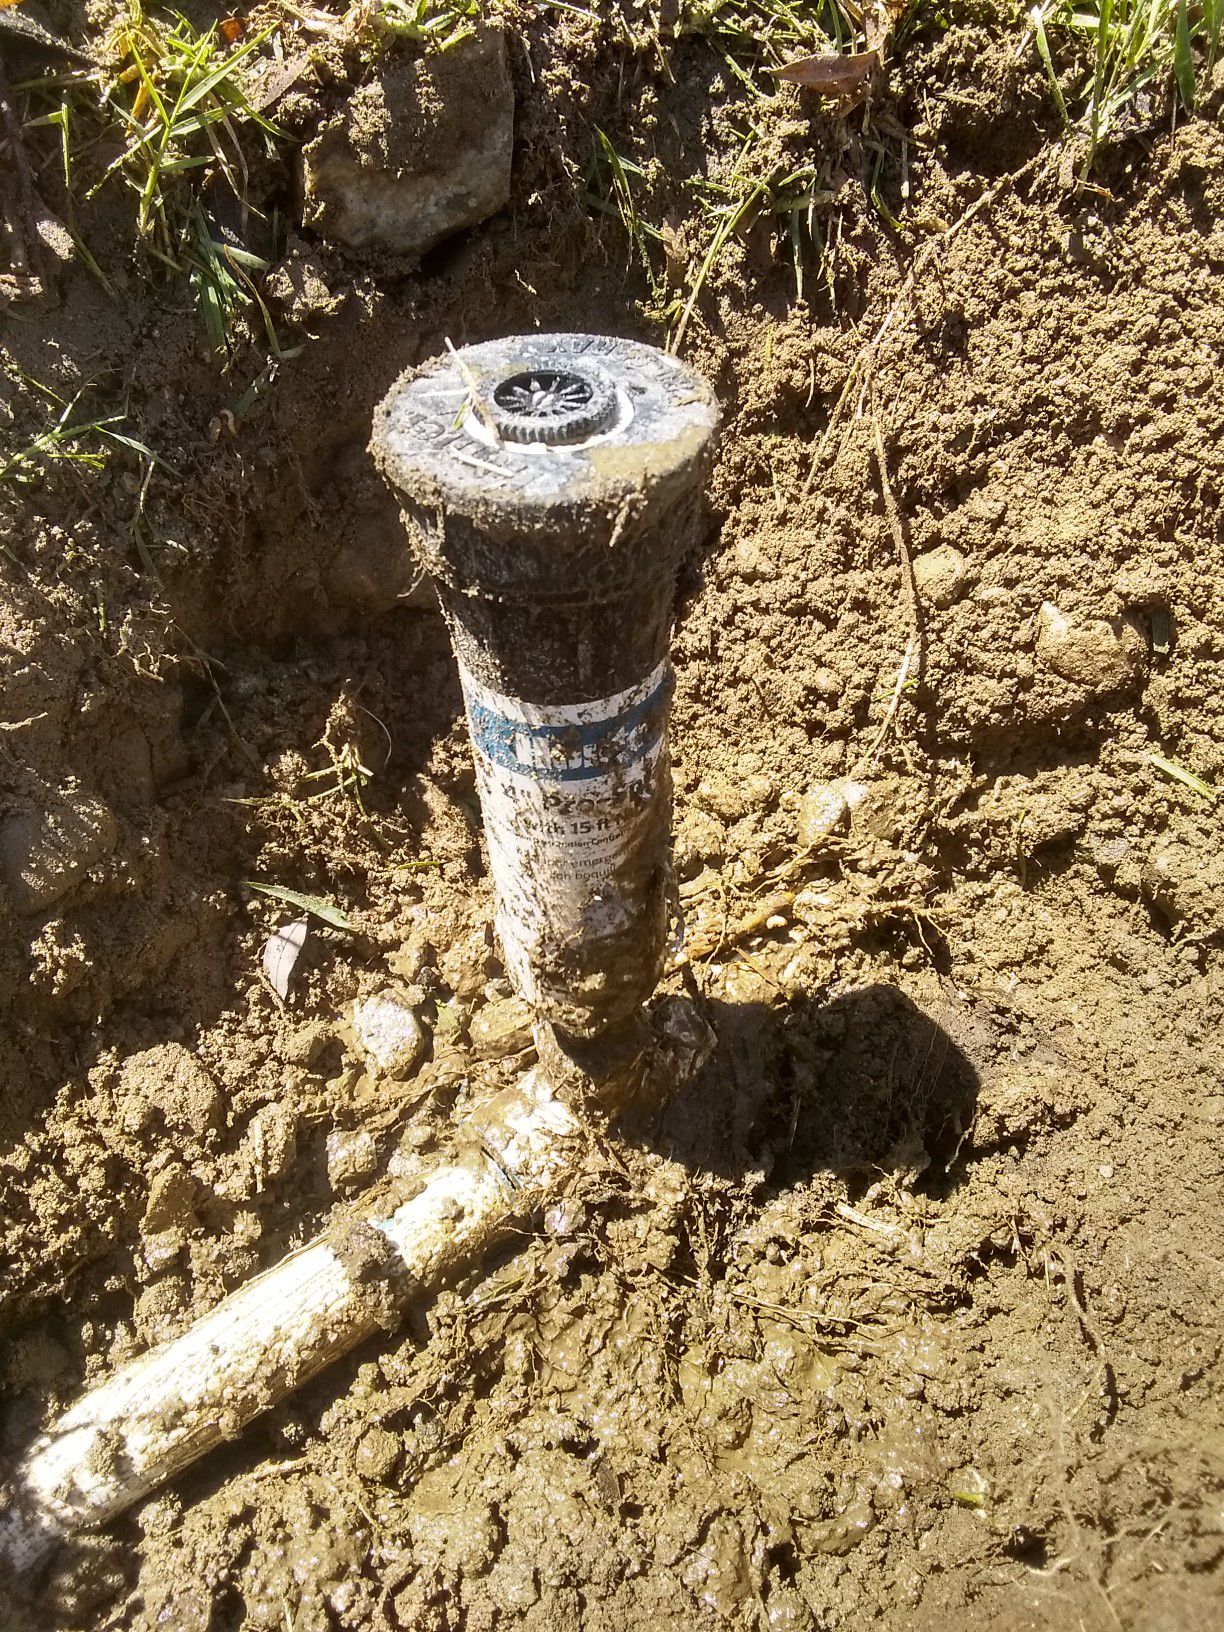 Sprinklers Irrigation repairs